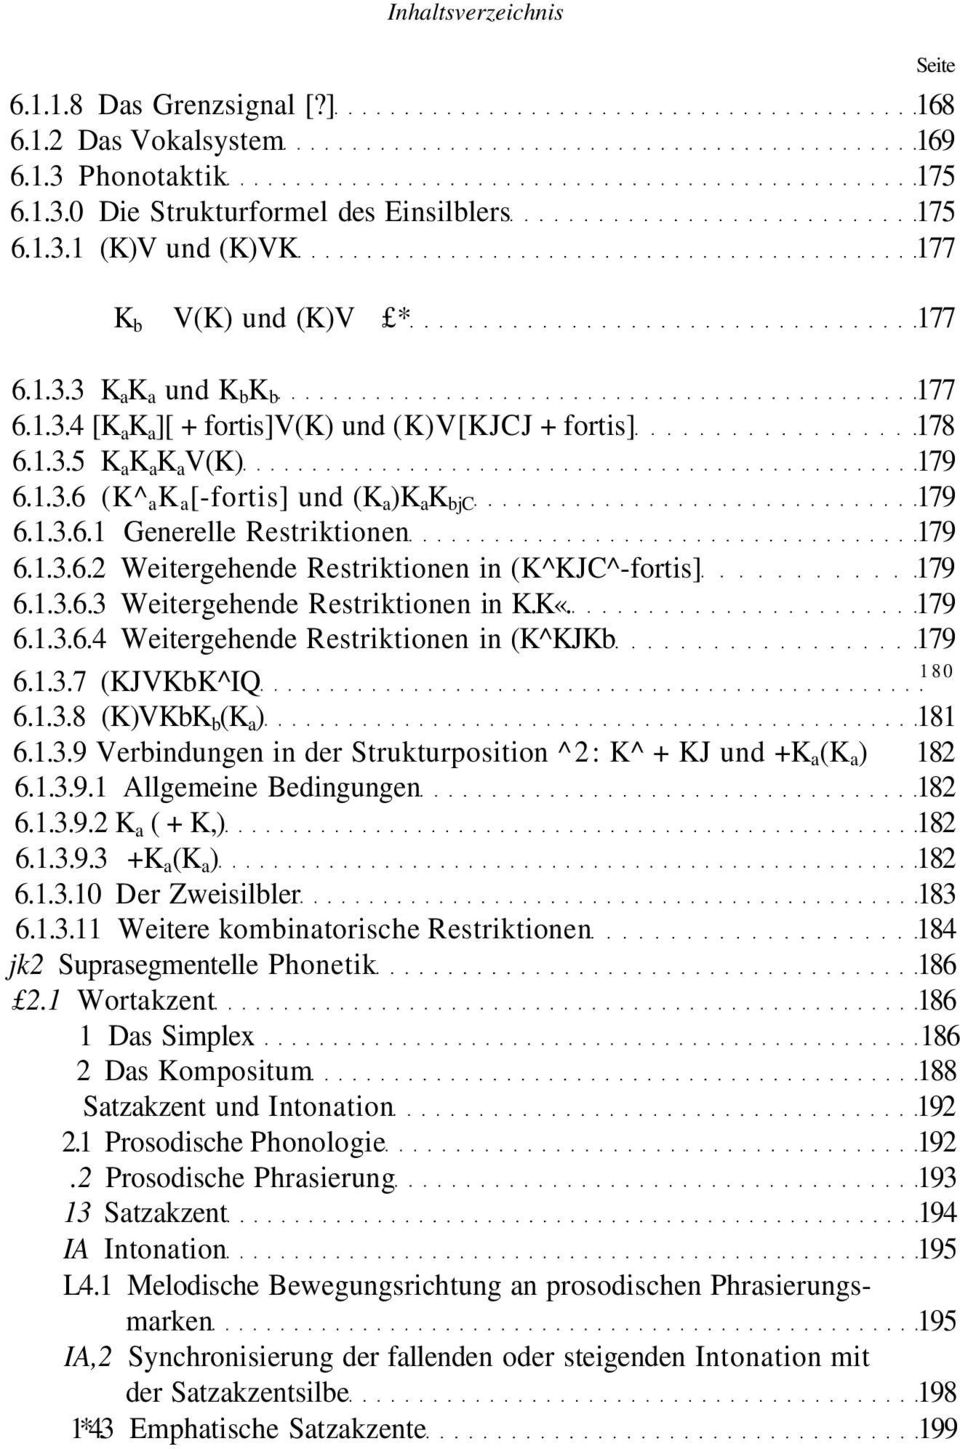 1.3.6.3 Weitergehende Restriktionen in K.K«. 179 6.1.3.6.4 Weitergehende Restriktionen in (K^KJKb 179 6.1.3.7 (KJVKbK^IQ 180 6.1.3.8 (K)VKbK b (K a ) 181 6.1.3.9 Verbindungen in der Strukturposition ^2: K^ + KJ und +K a (K a ) 182 6.